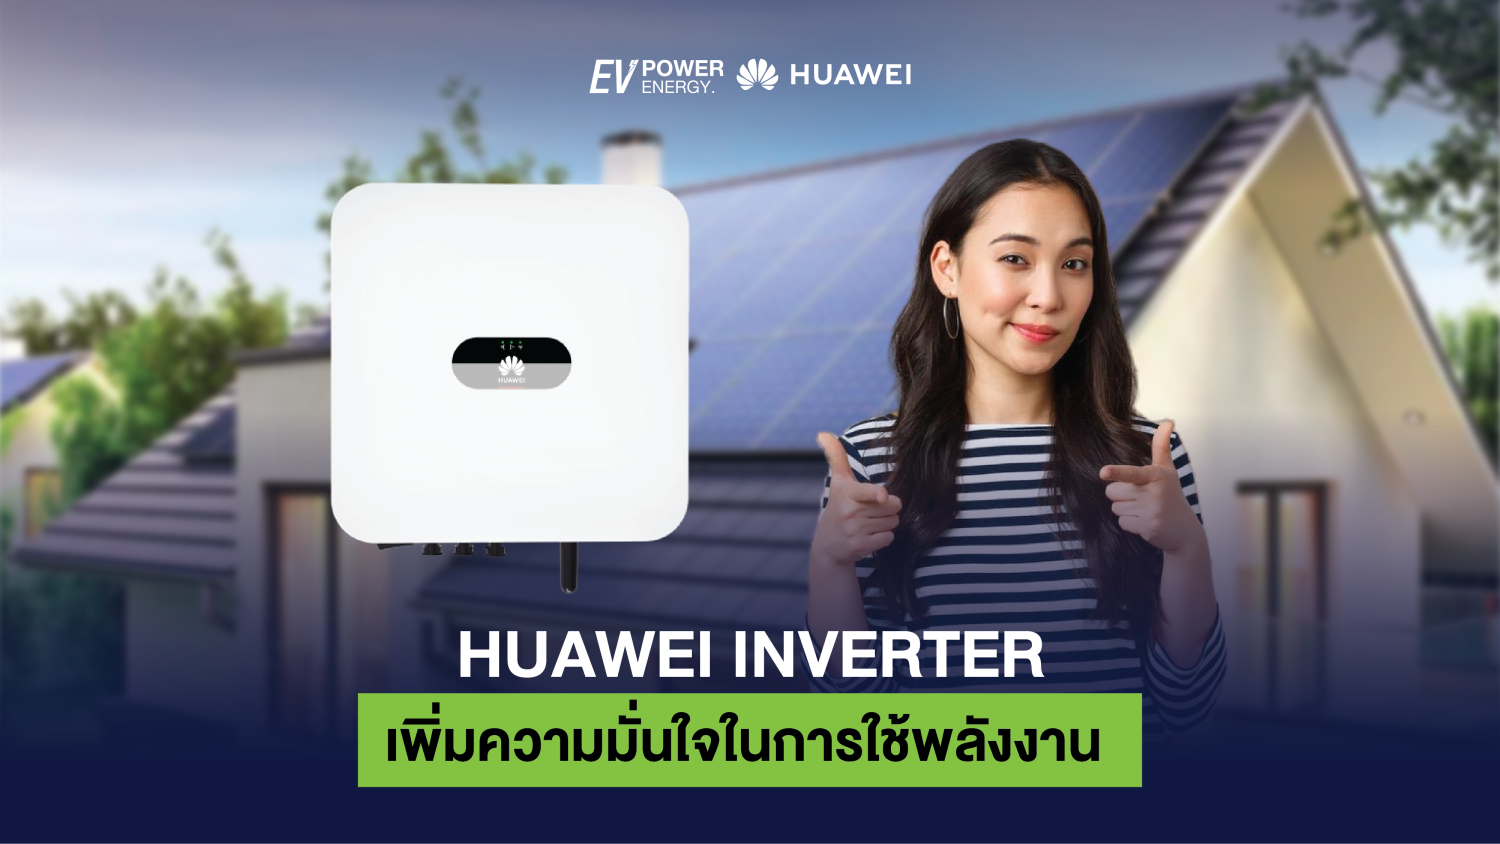 Huawei Inverter เพิ่มความมั่นใจในการใช้พลังงาน 1